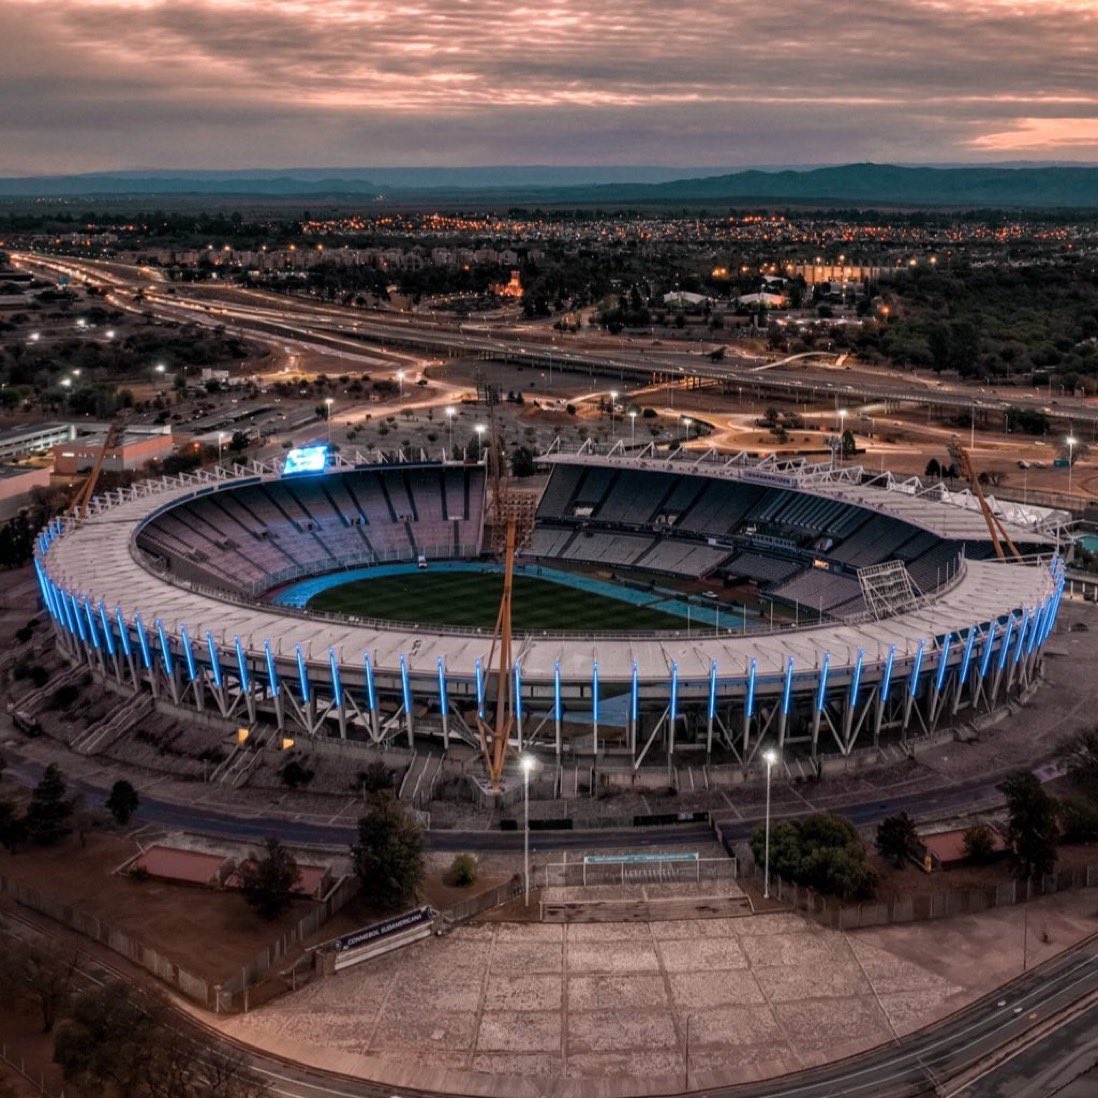 ¡Hoy es el 46 aniversario del Estadio Mario Alberto #Kempes! 🙌🏻

El Kempes es un espacio emblemático de la provincia, con el nombre de una figura histórica para los cordobeses, y que ha sido sede de numerosos espectáculos deportivos, artísticos y culturales en #CórdobaCapital.